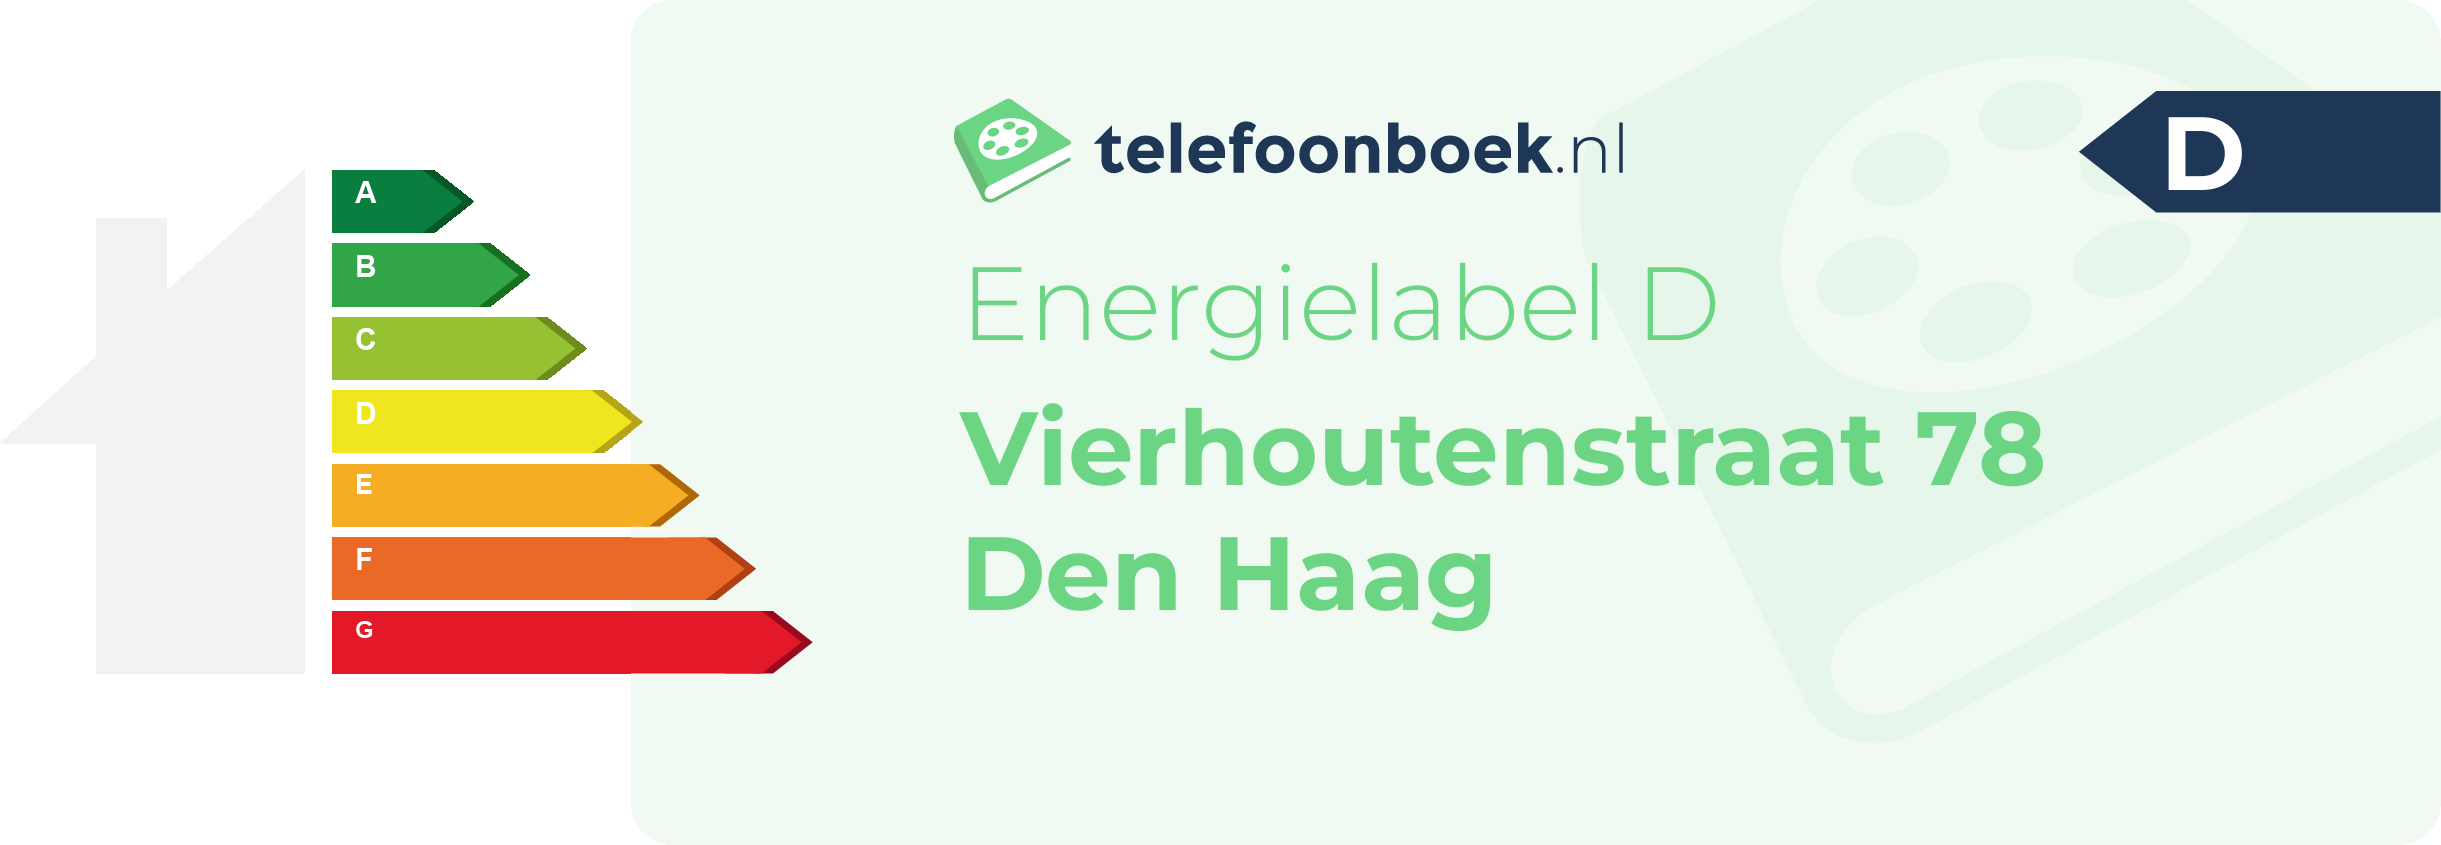 Energielabel Vierhoutenstraat 78 Den Haag